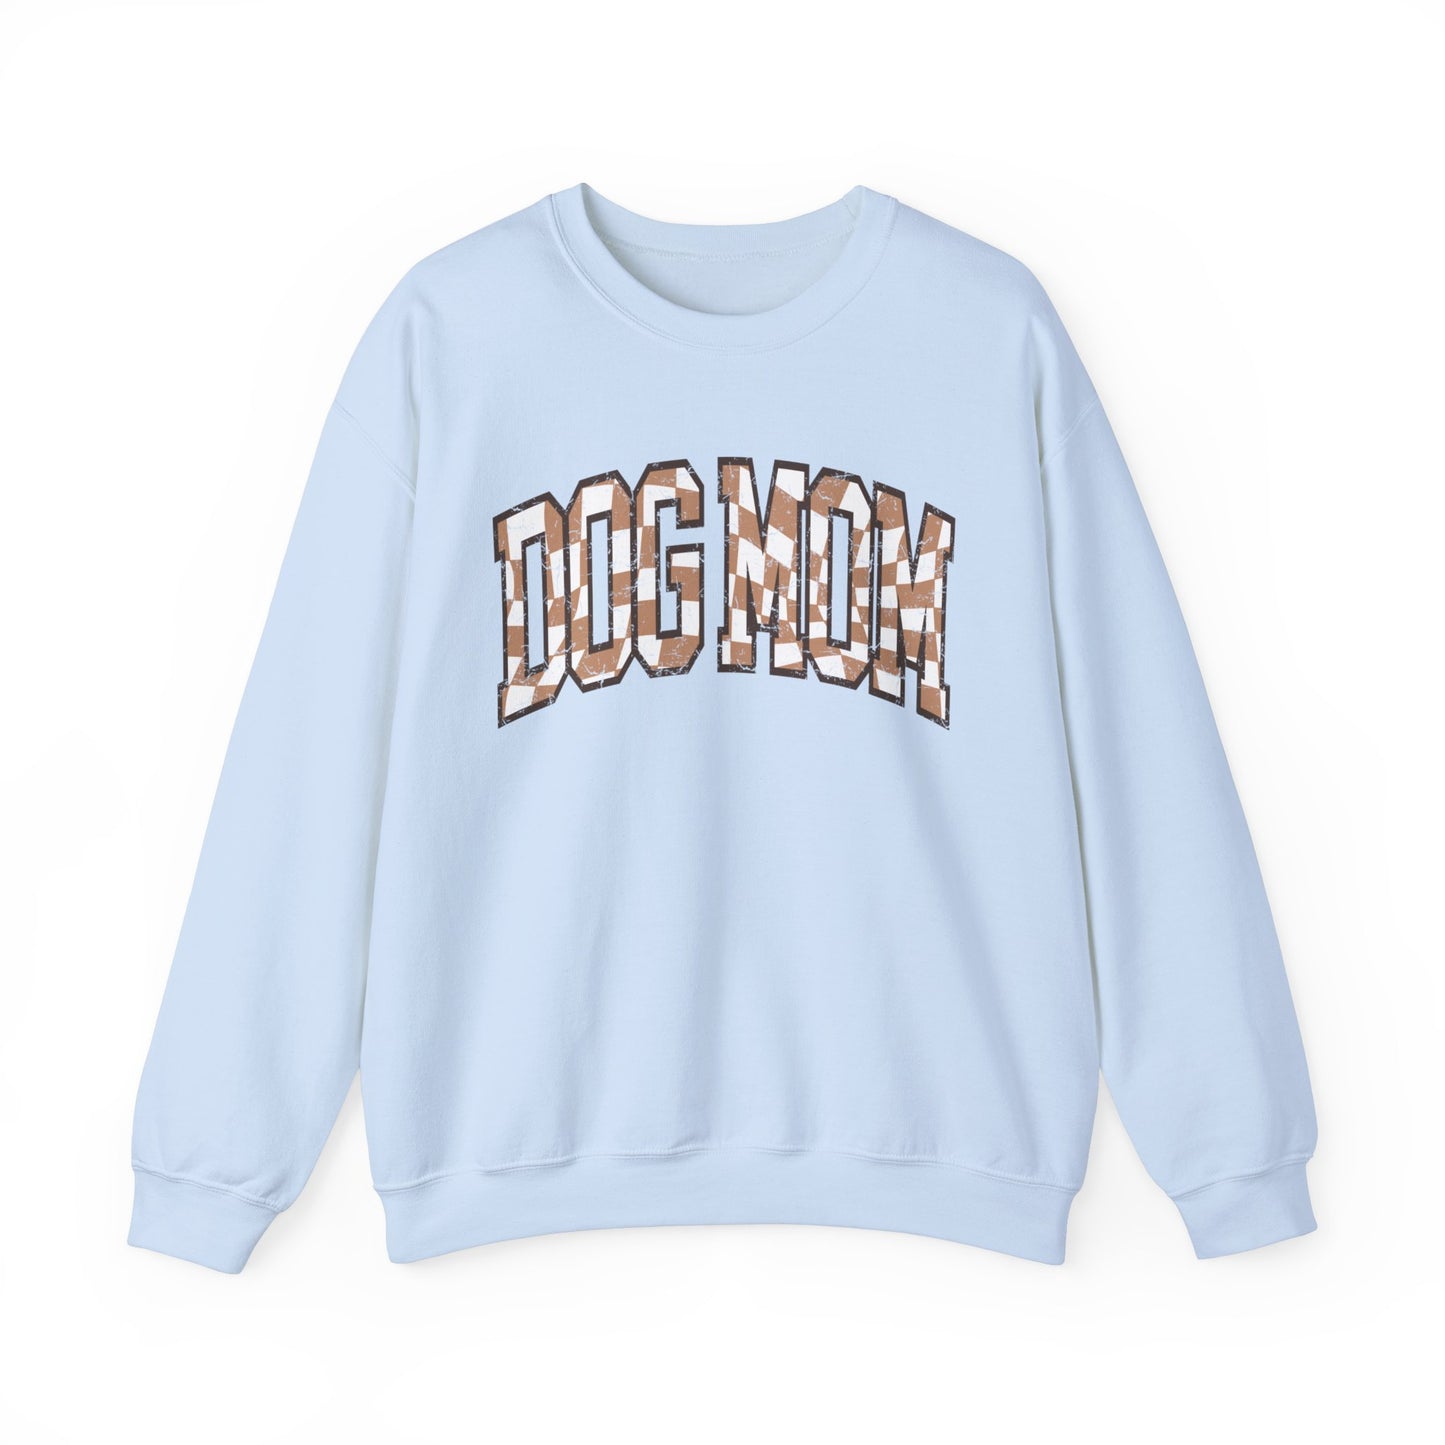 Trendiger Pullover für Labrador Hundemama